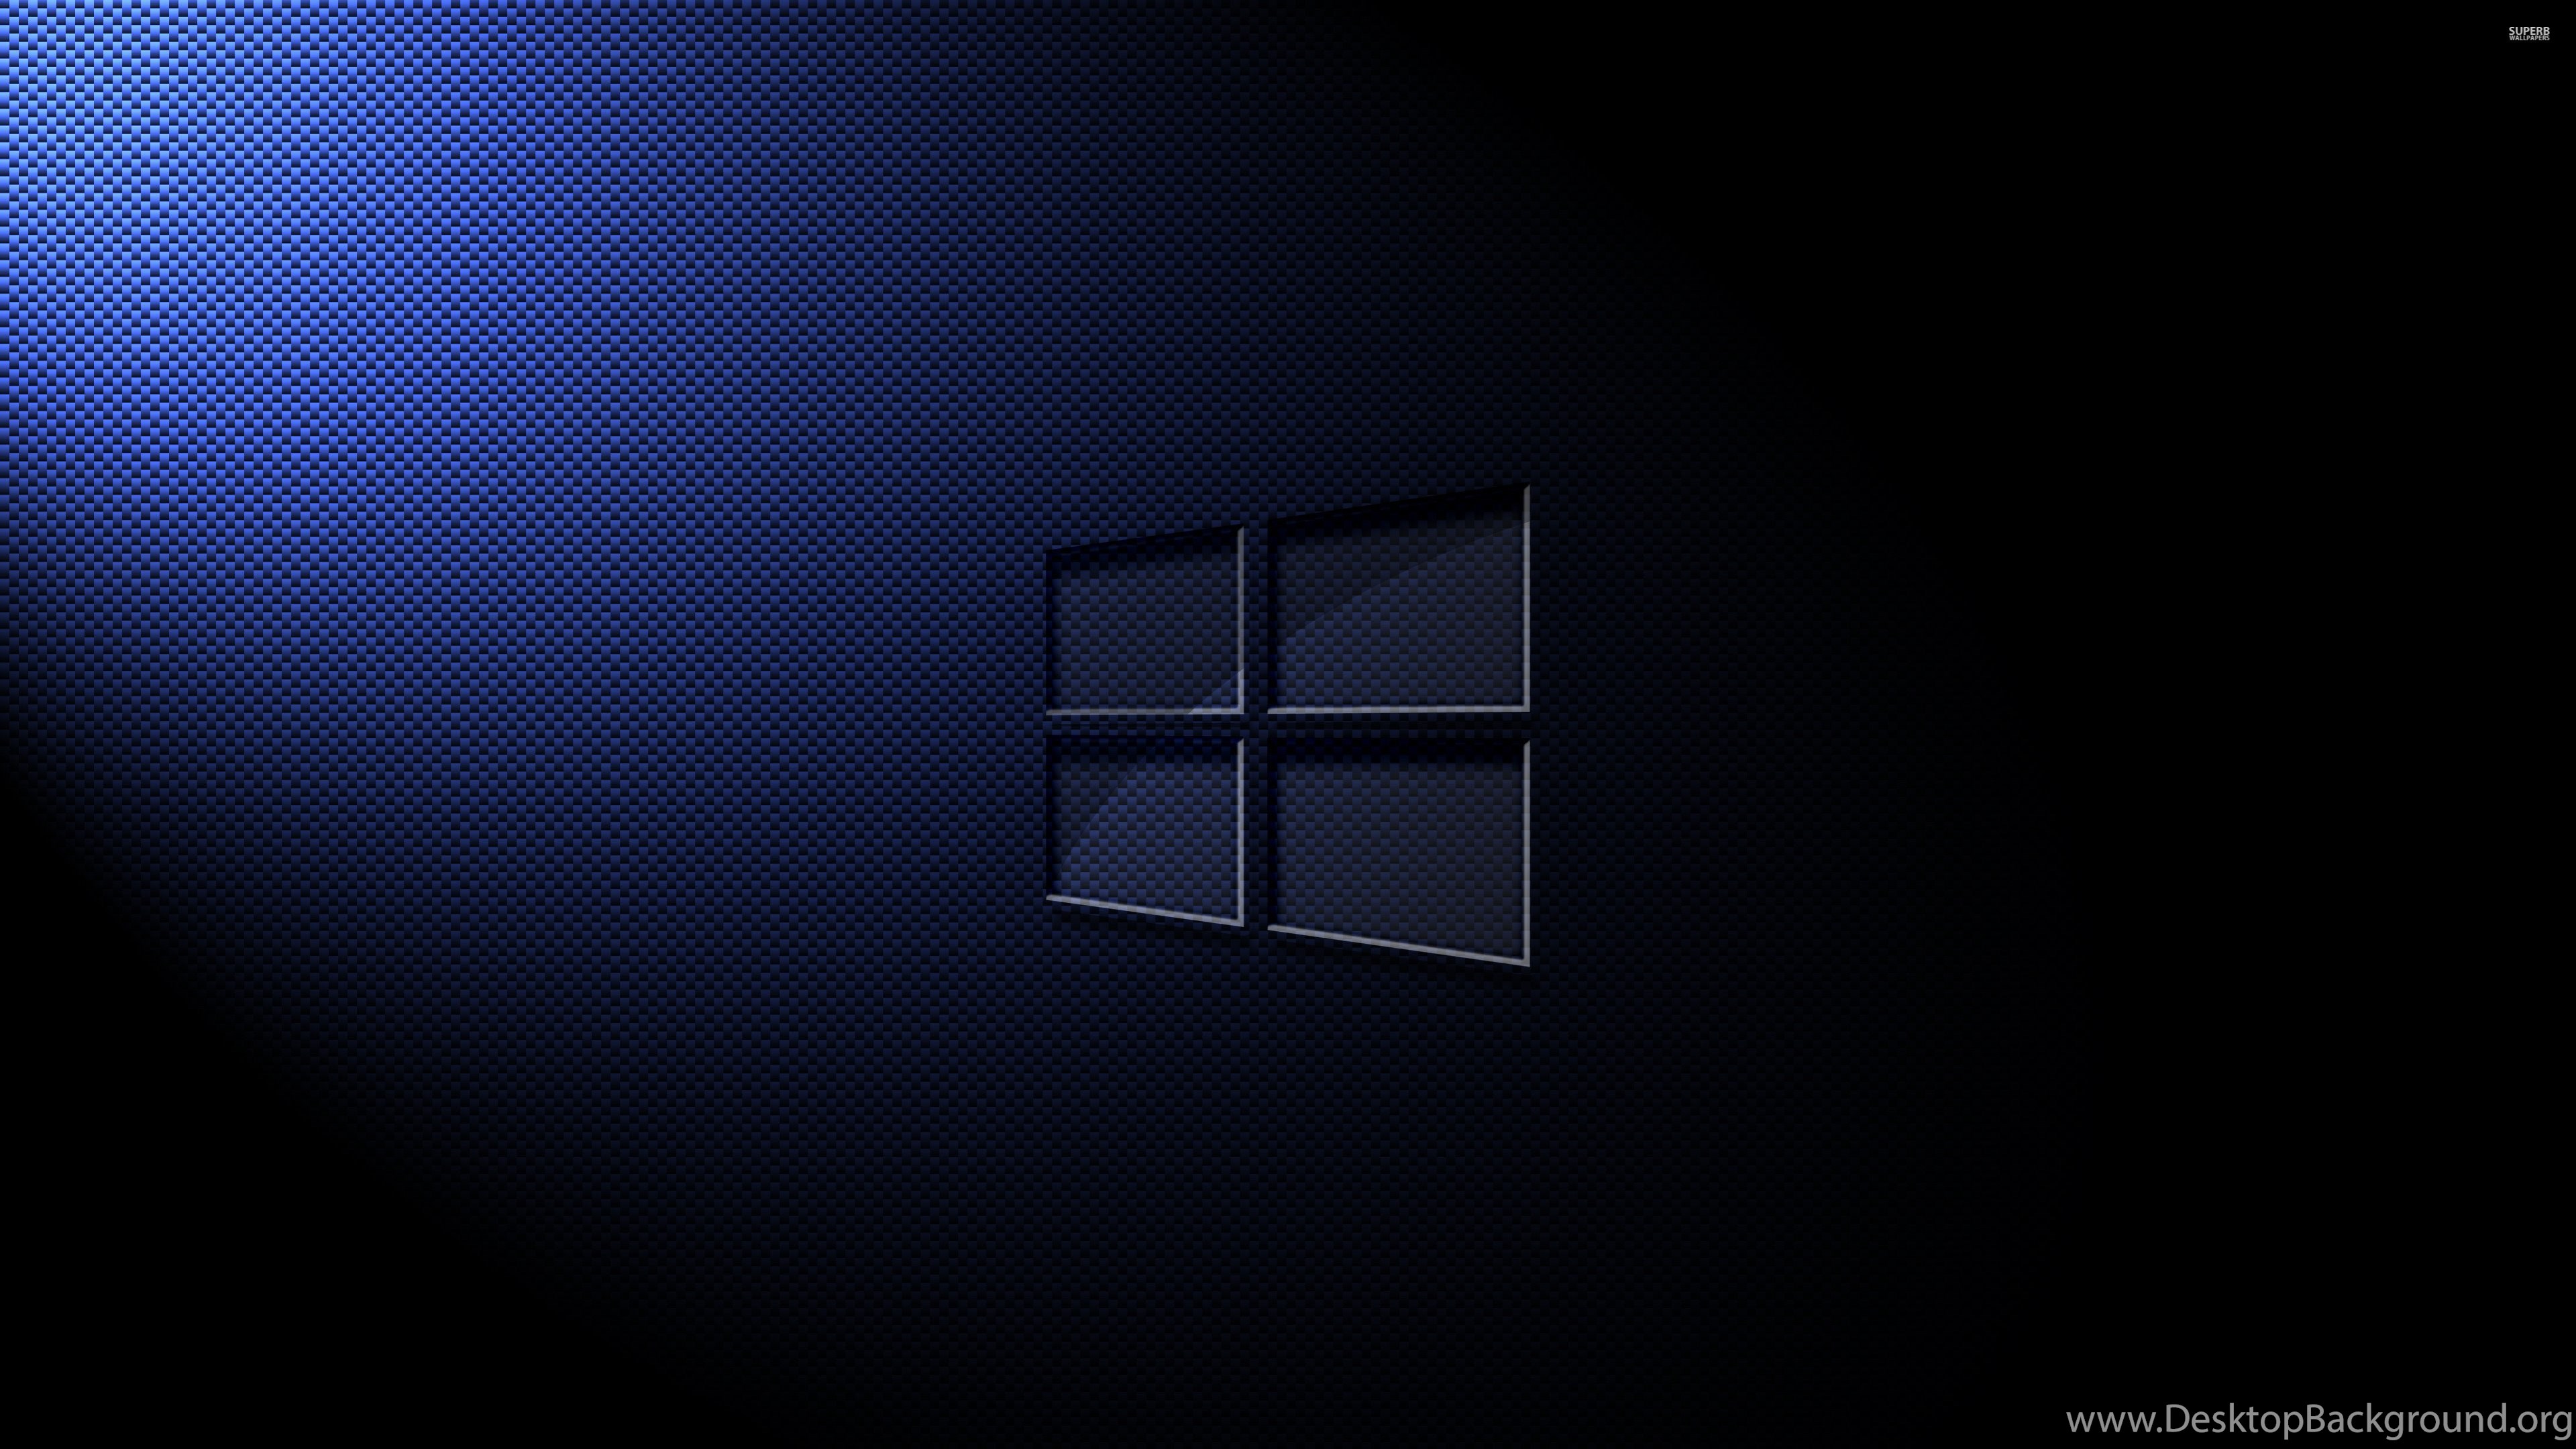 Windows 10, logo on a black background, orange backlight, creative logo, win  10, HD wallpaper | Peakpx